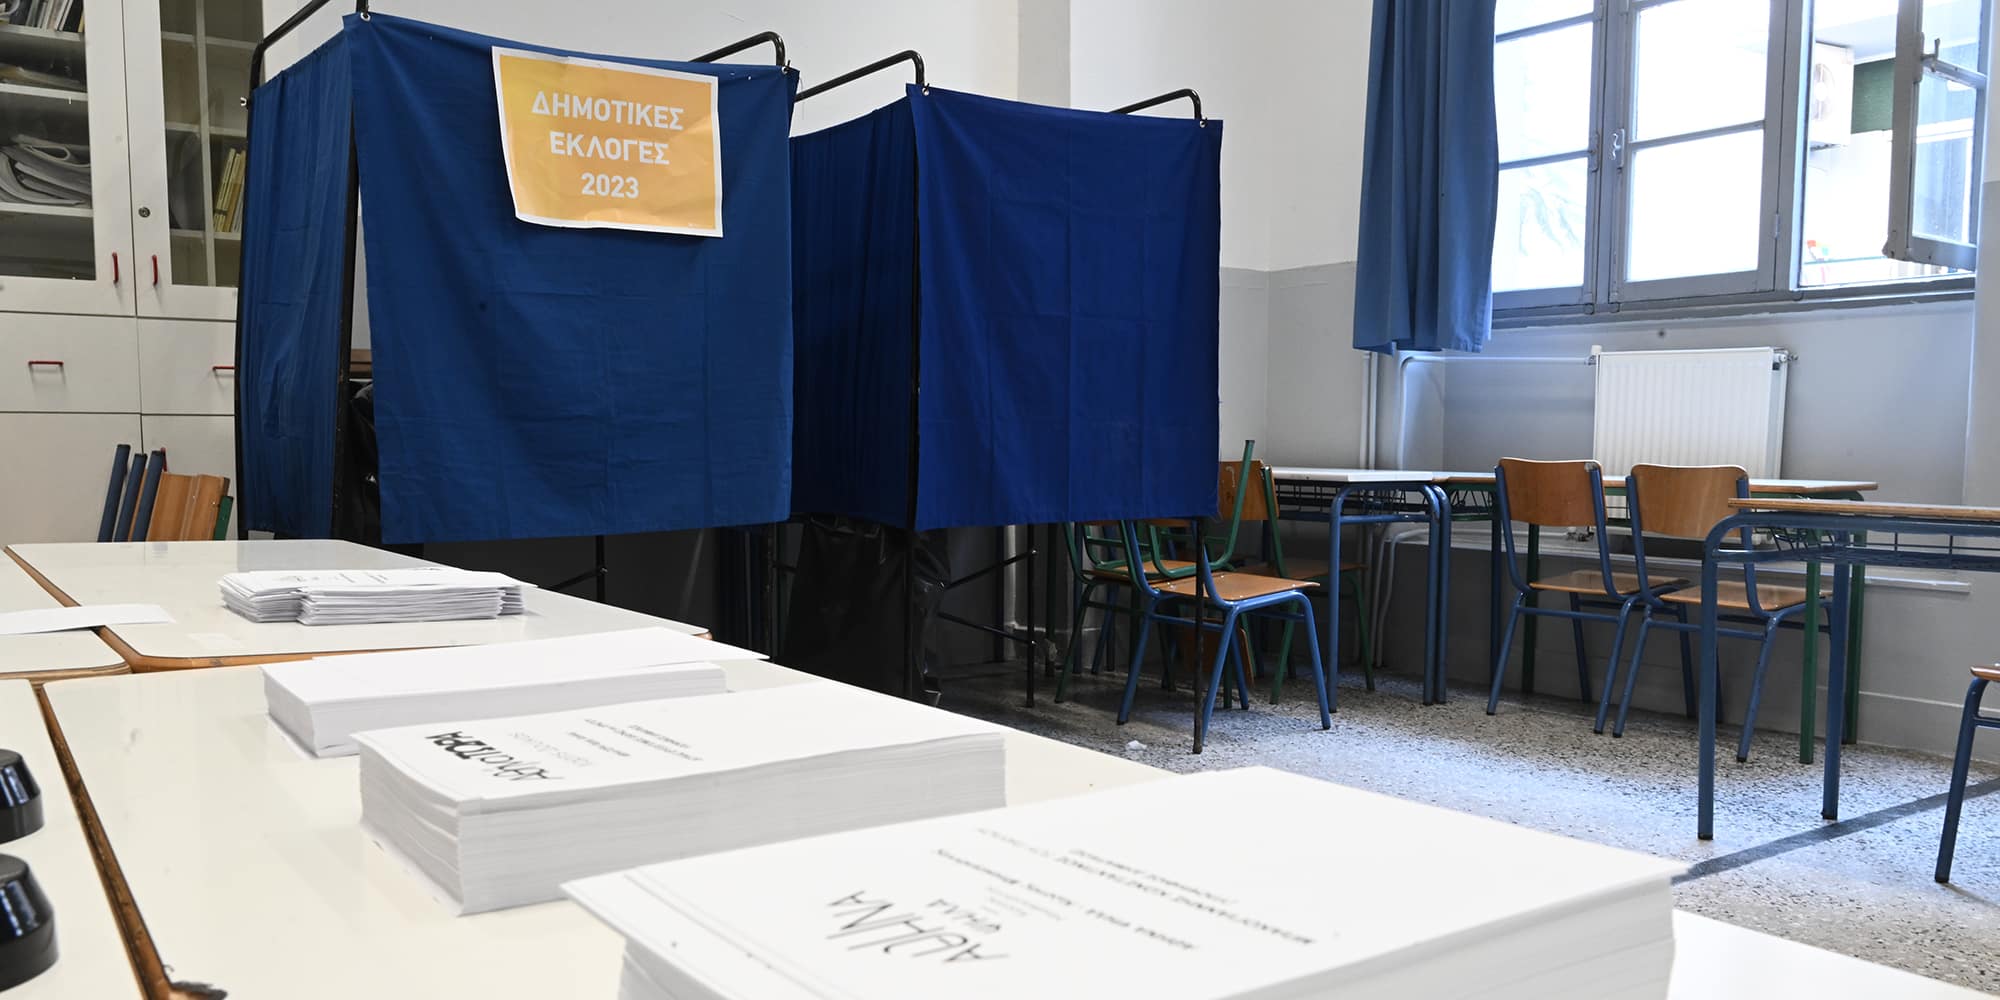 Εικόνα από εκλογικό κέντρο της Αθήνας